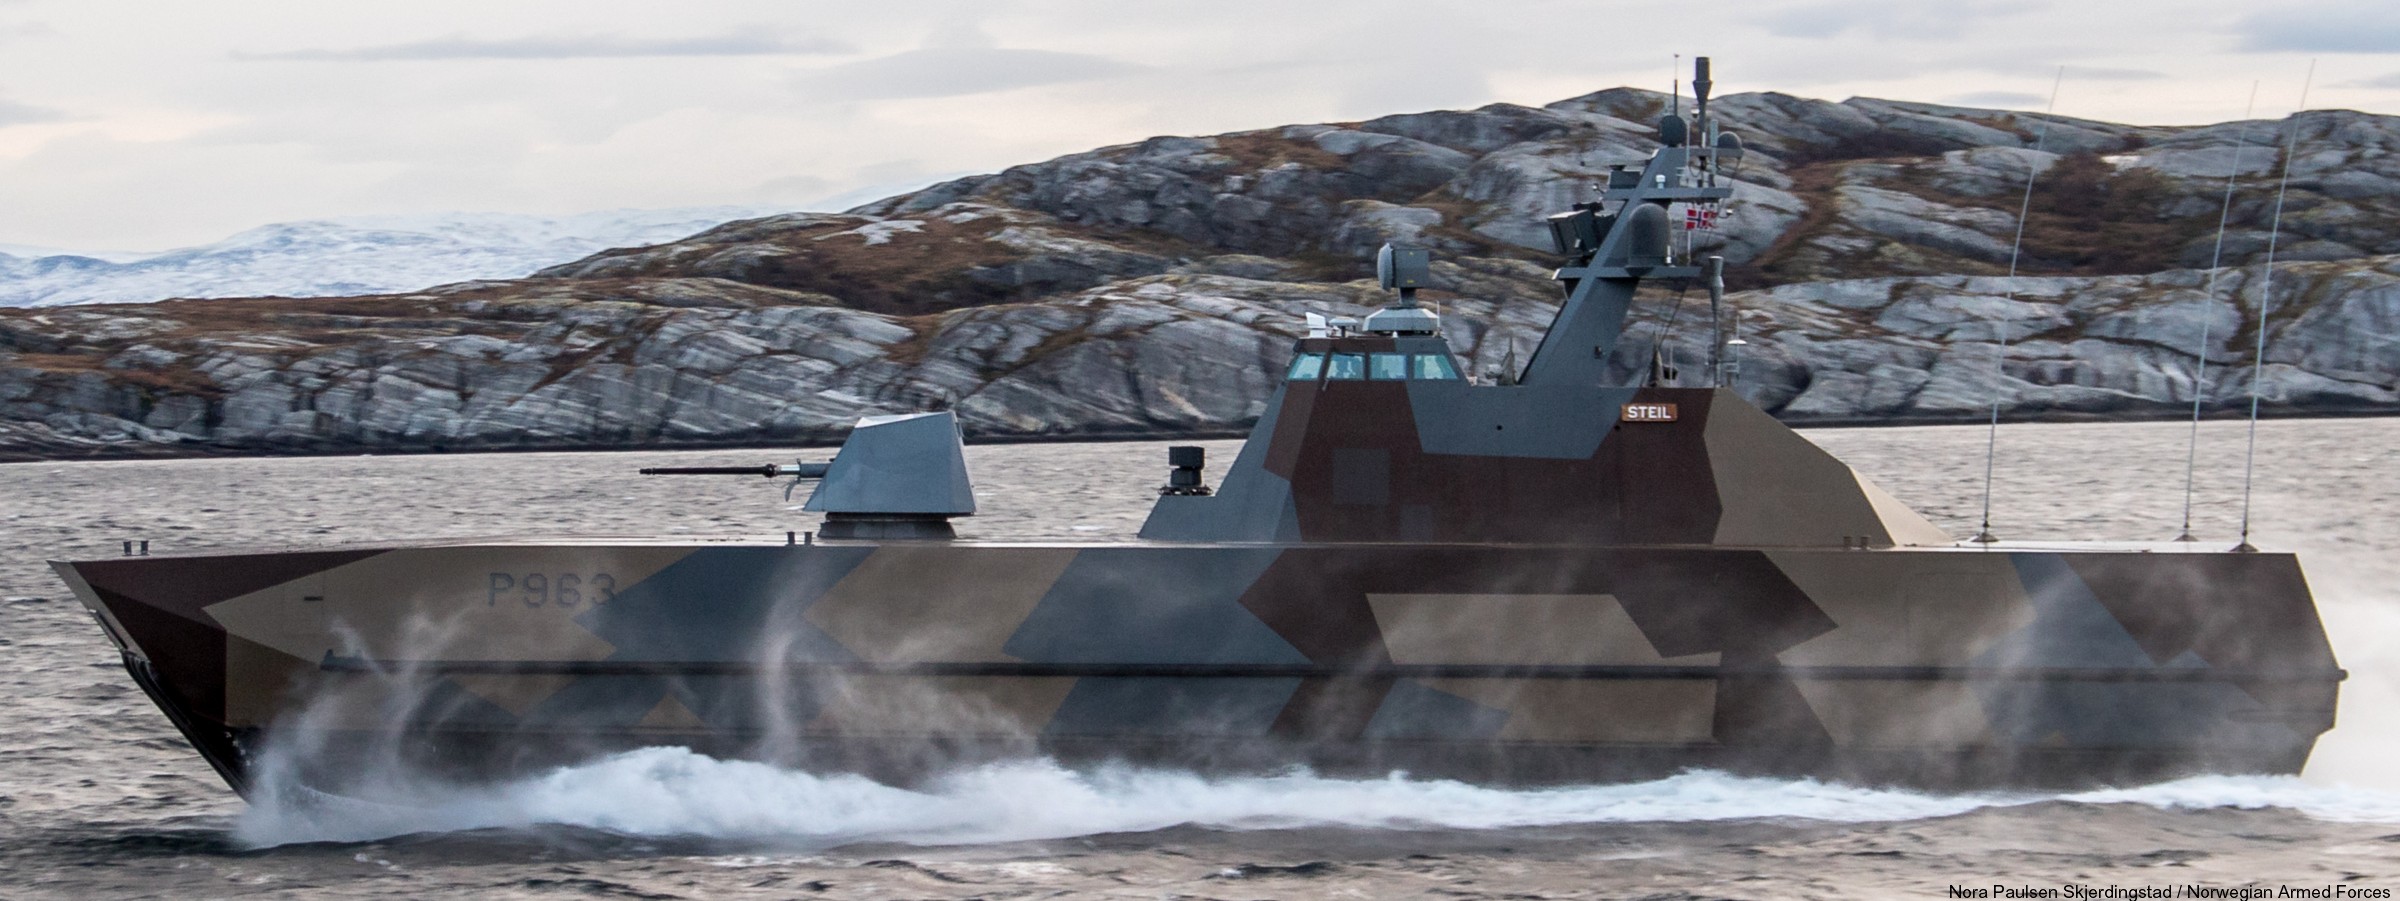 p-963 steil knm hnoms skjold class corvette royal norwegian navy sjoforsvaret 11